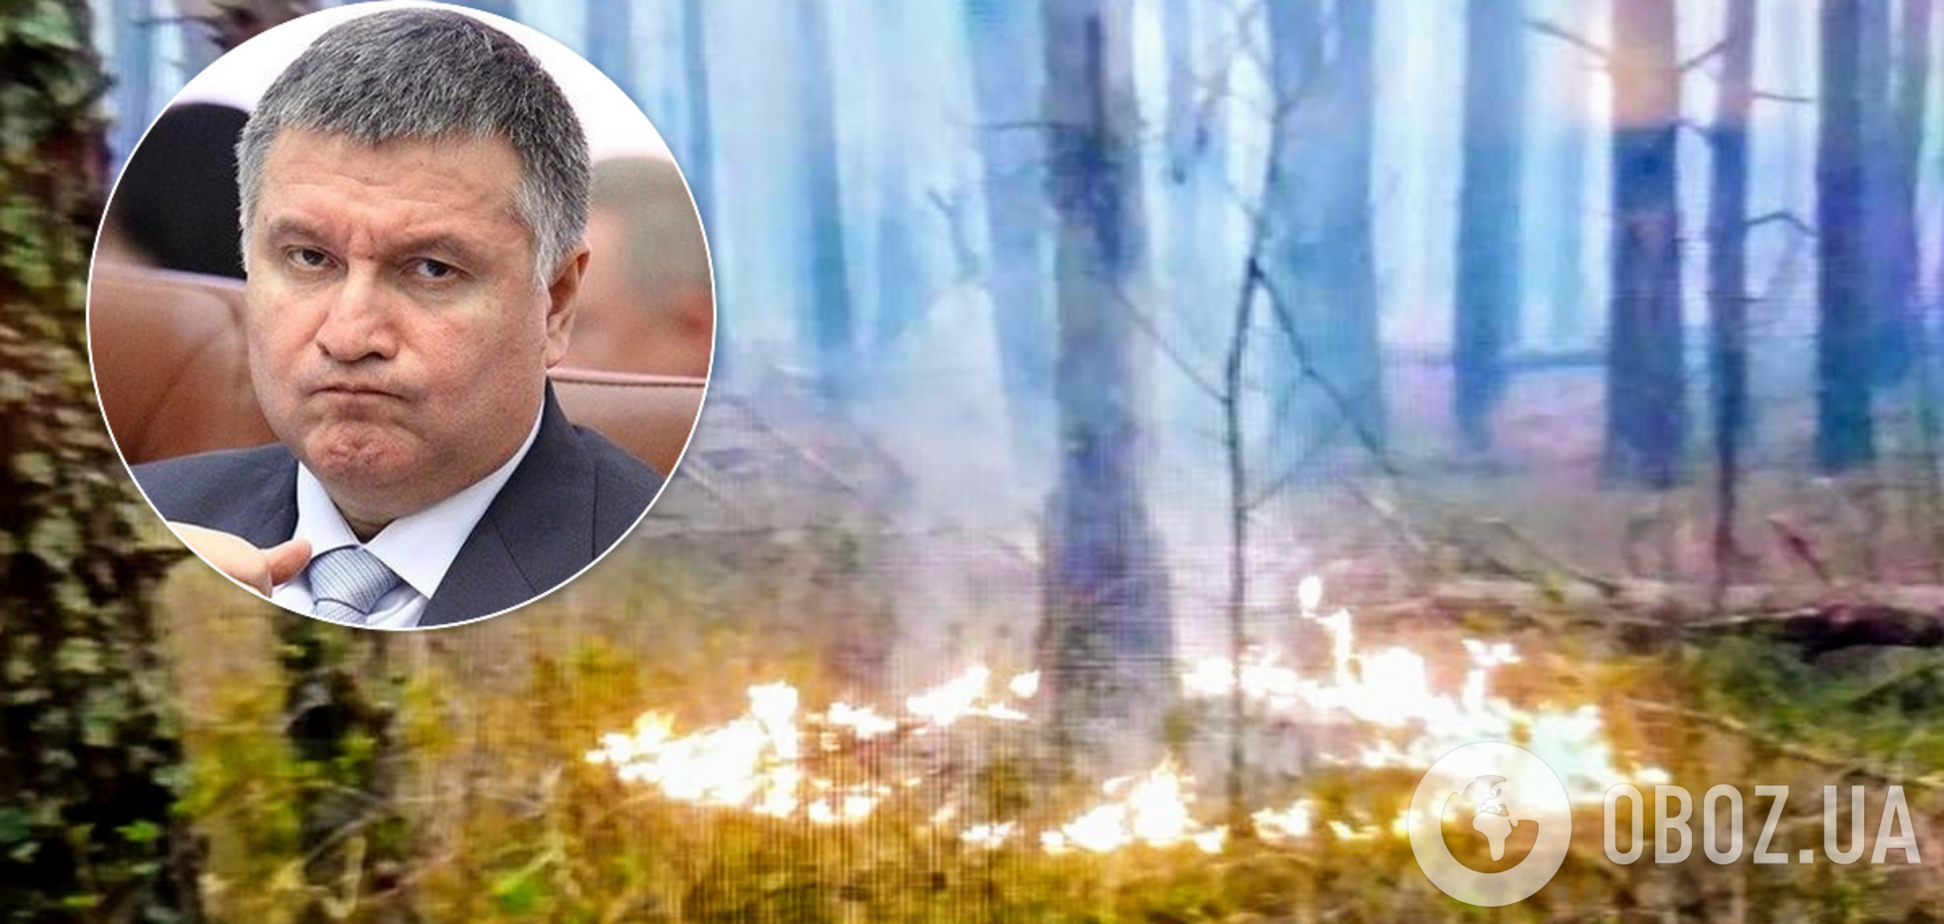 Аваков разозлился из-за поджогов в Украине и пригрозил виновным